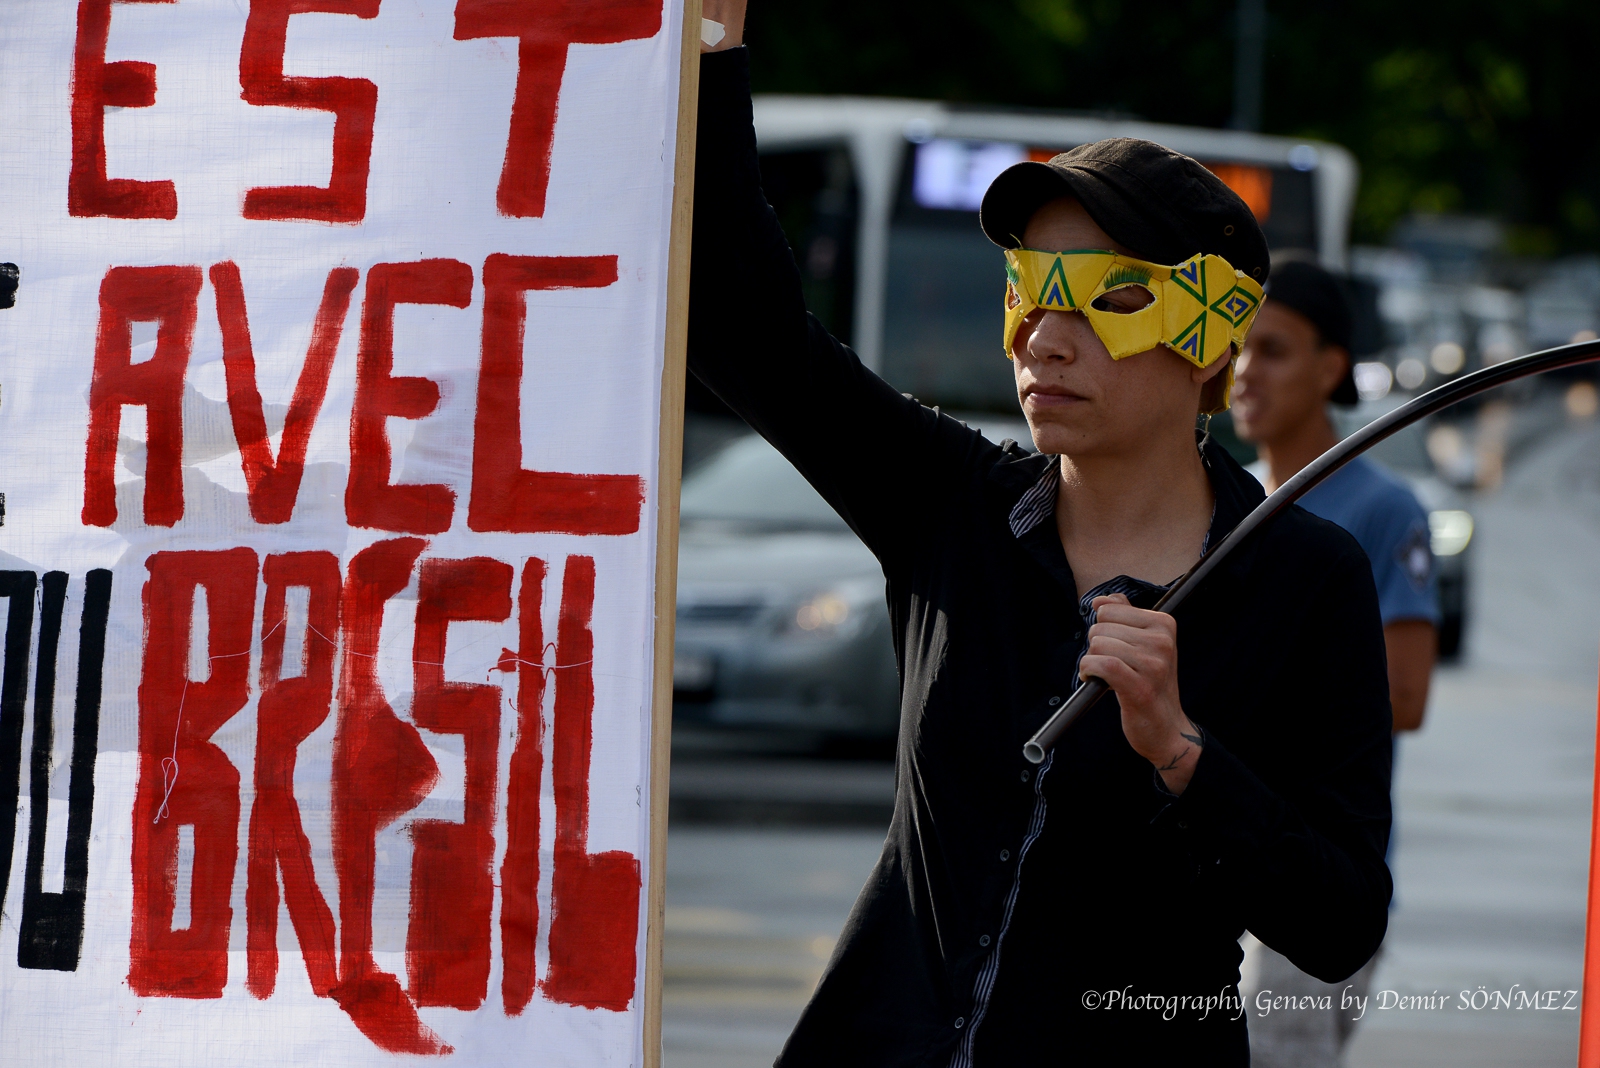 Rassemblement de solidarité avec les travailleur-se-s-en lutte et aux mouvement sociaux au Brésil-2332.jpg